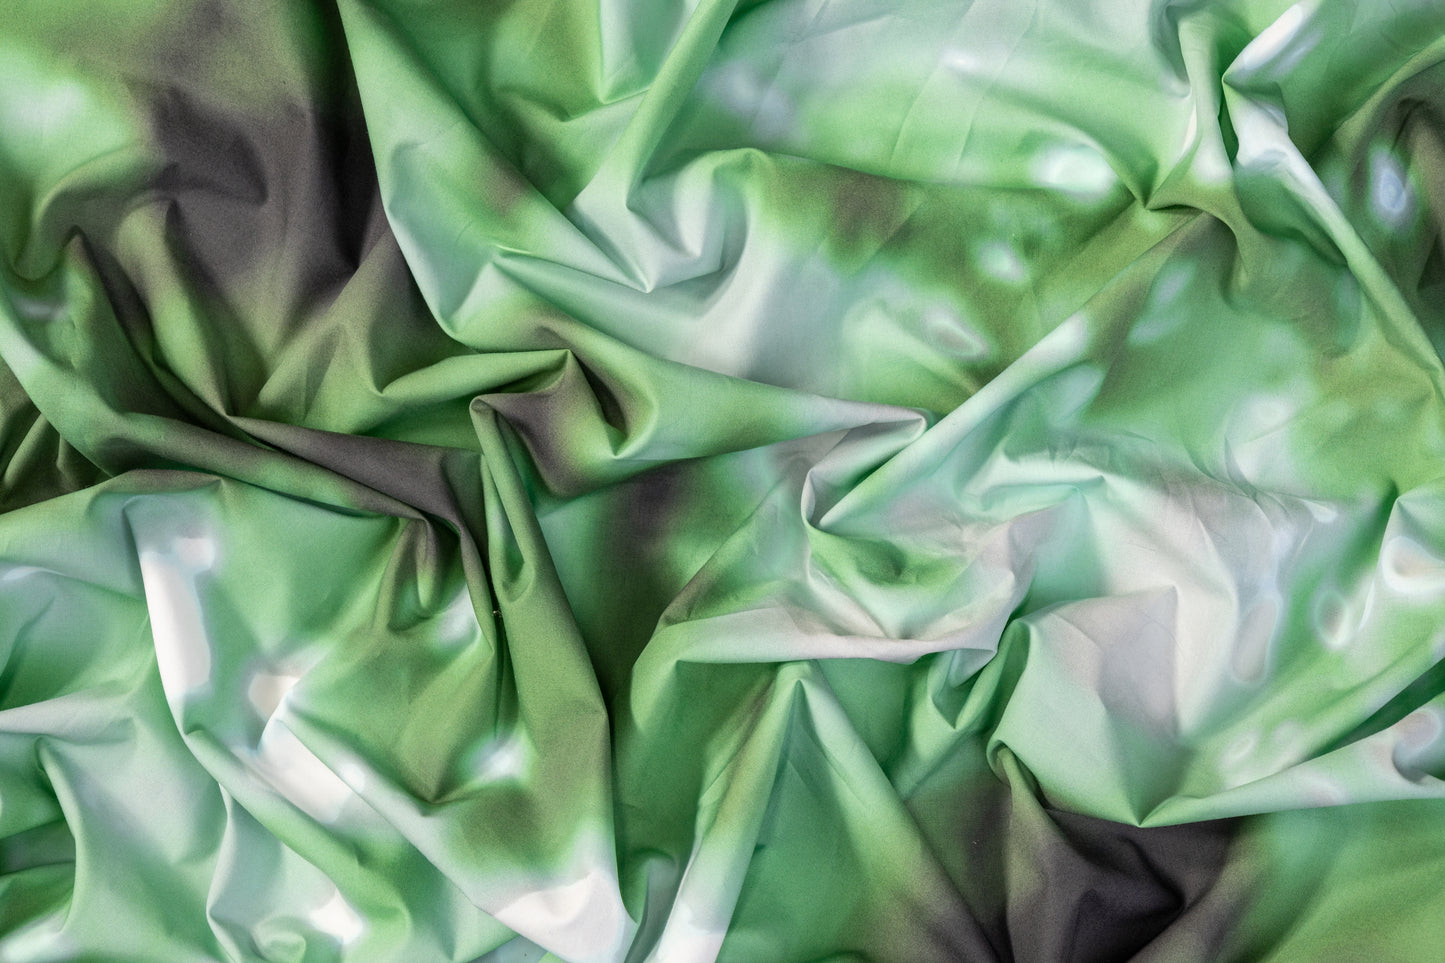 Tie-Dye Printed Cotton - Green / White / Black